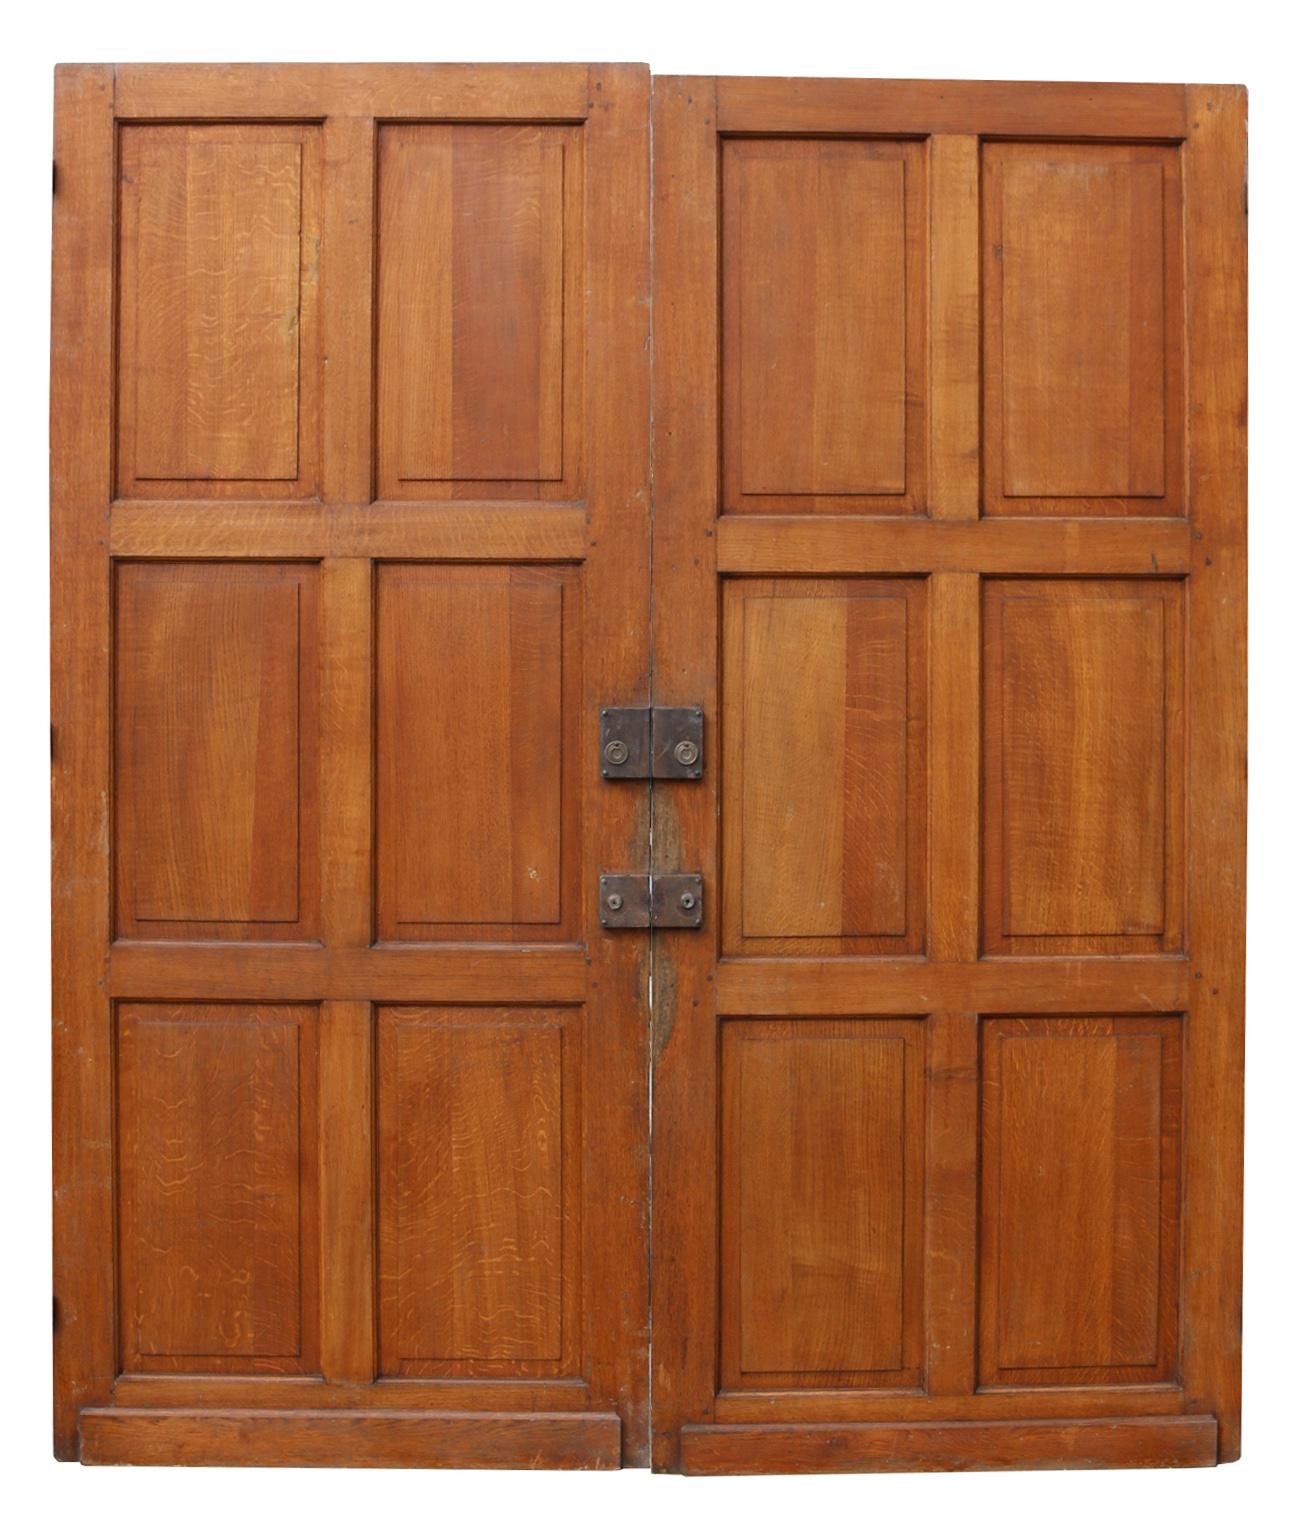 fielded panel doors